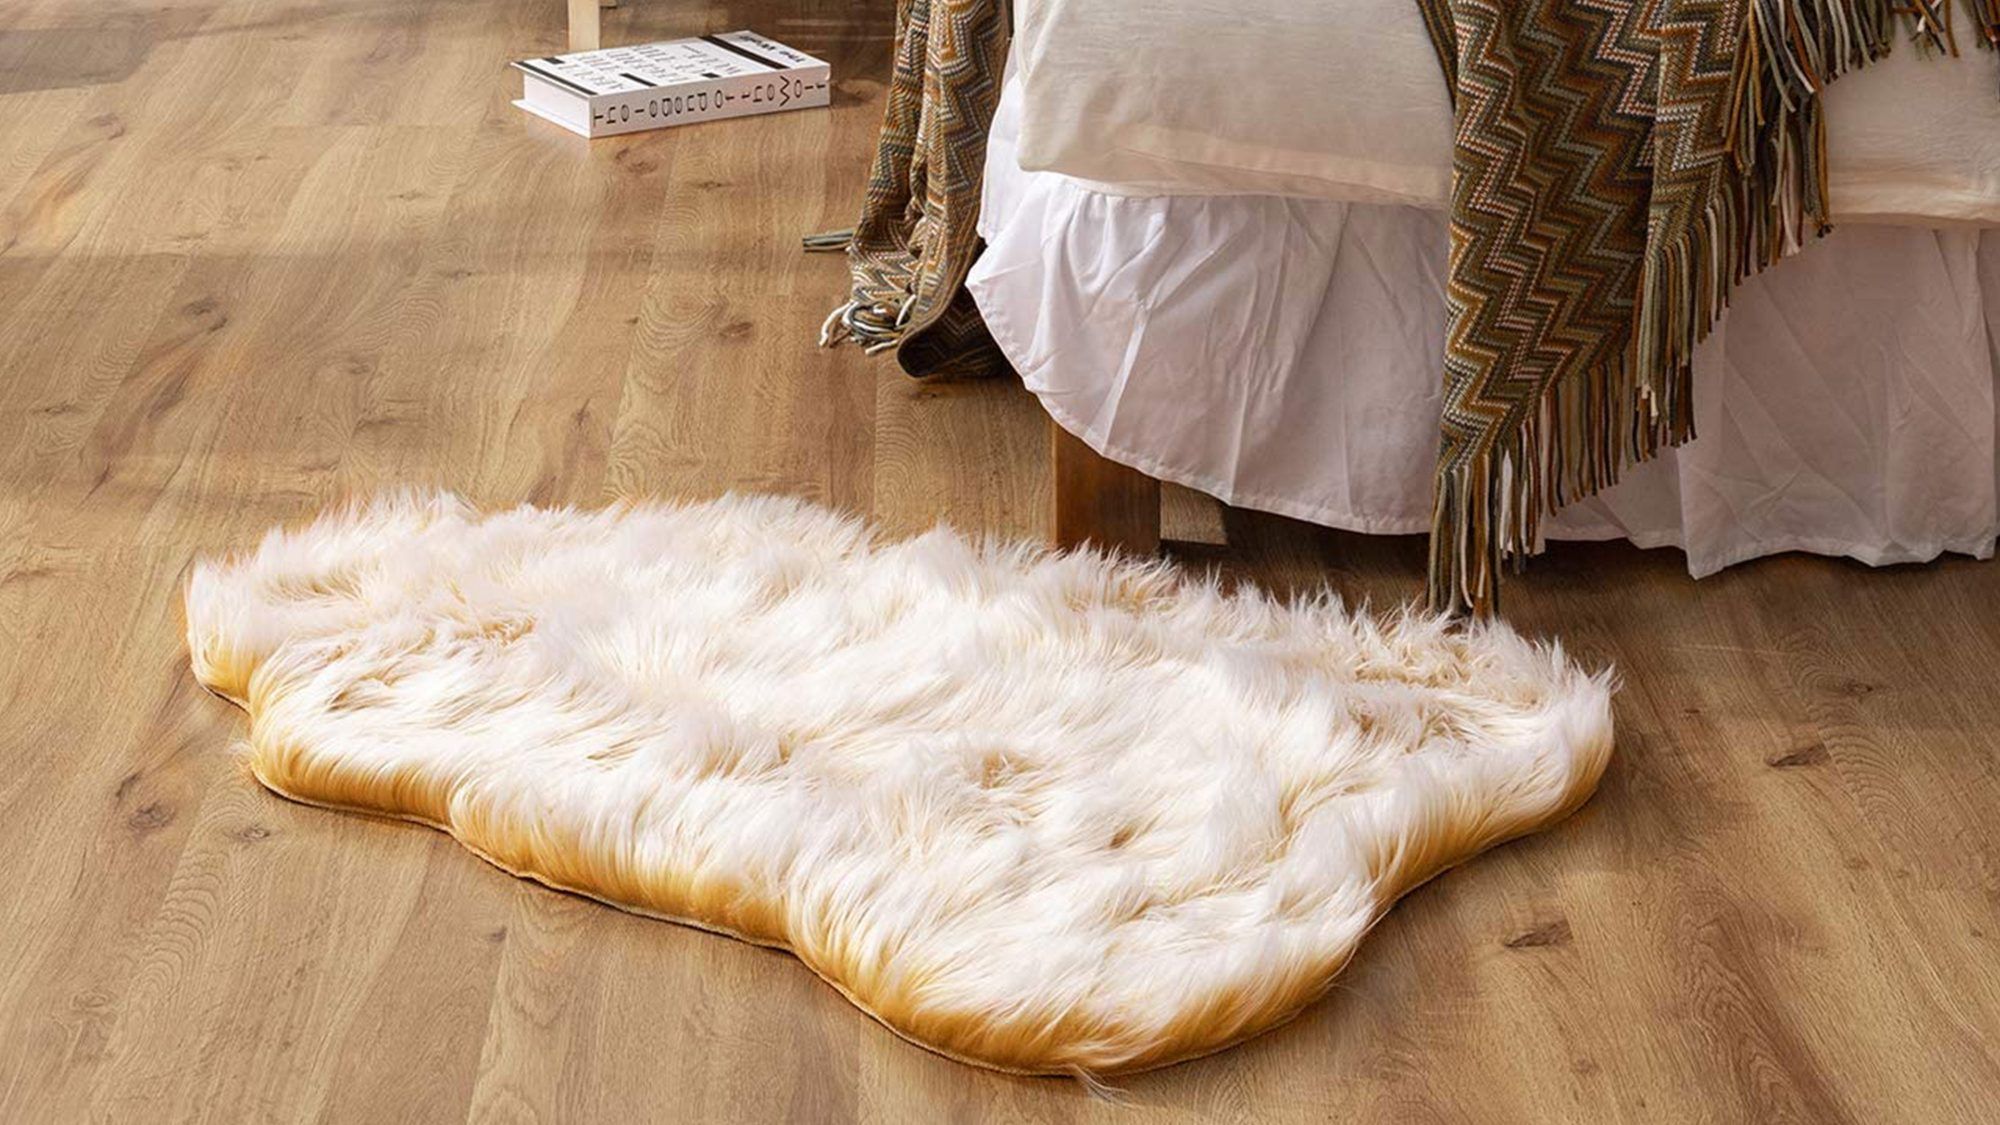 Χιλιάδες αγοραστές του Amazon προσθέτουν αυτό το «πολυτελές και μαλακό» χαλί από ψεύτικη γούνα 20 $ στη λίστα επιθυμιών τους